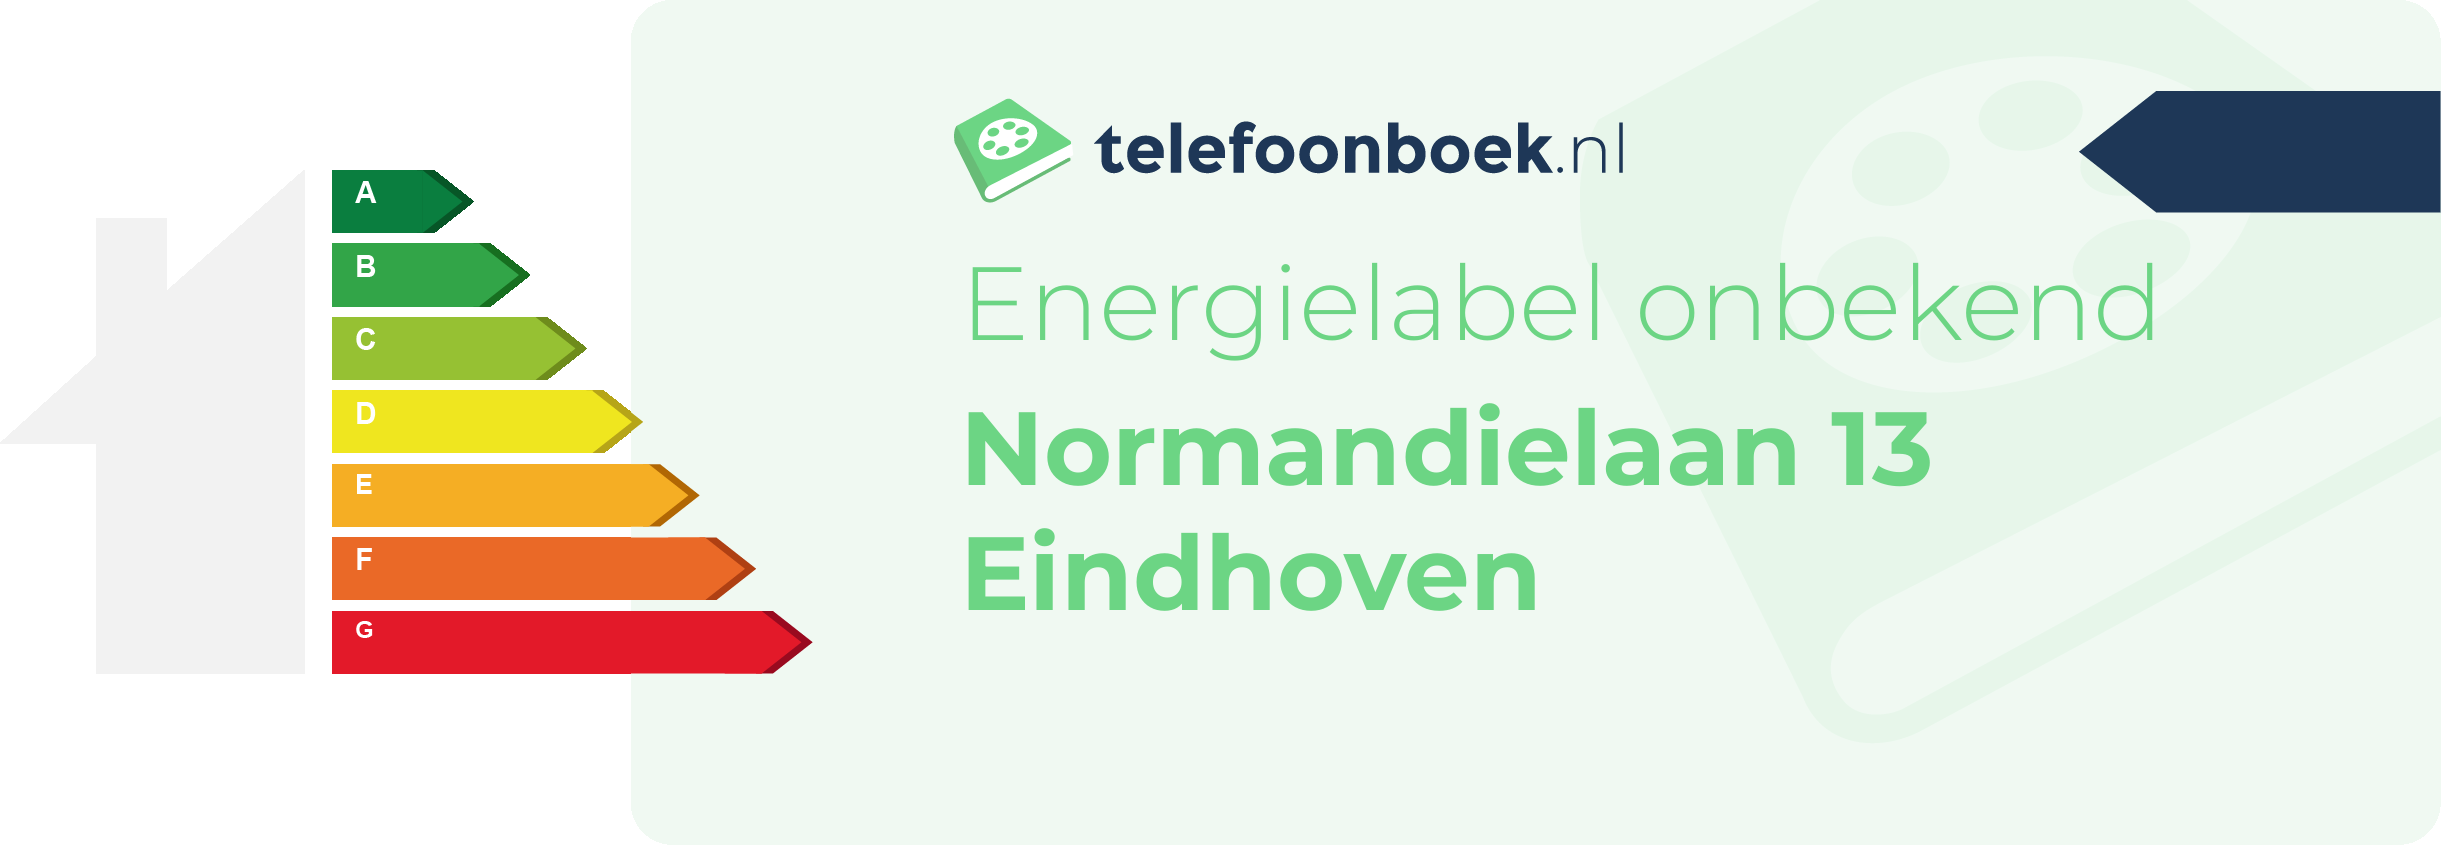 Energielabel Normandielaan 13 Eindhoven